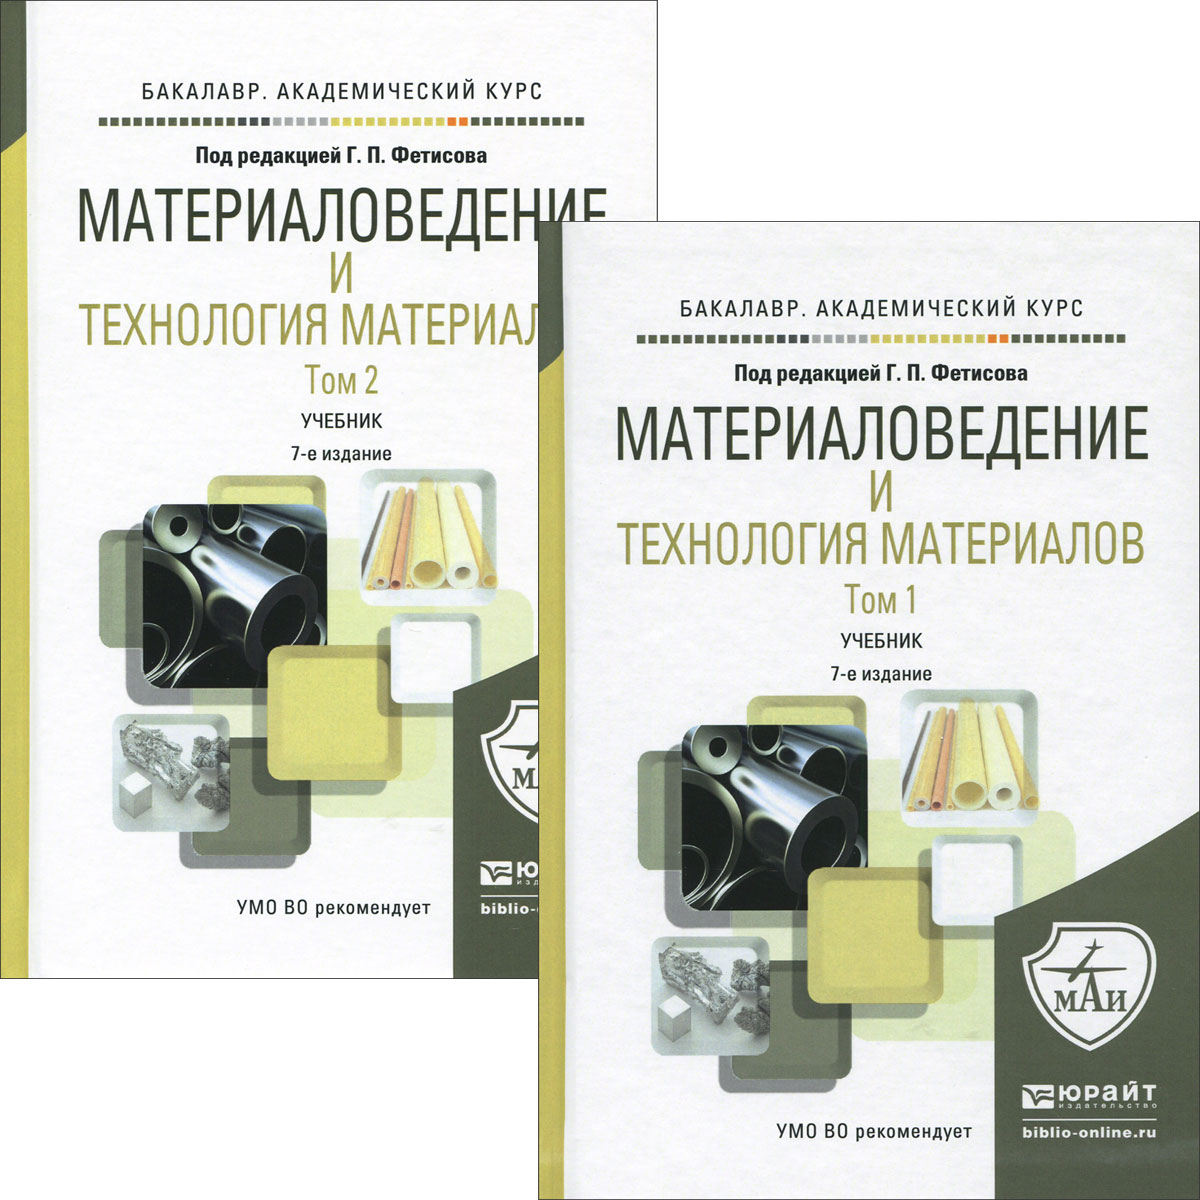 M атериаловедение и технология материалов. Учебник. В 2 томах. Том 1-2 (комплект из 2 книг)